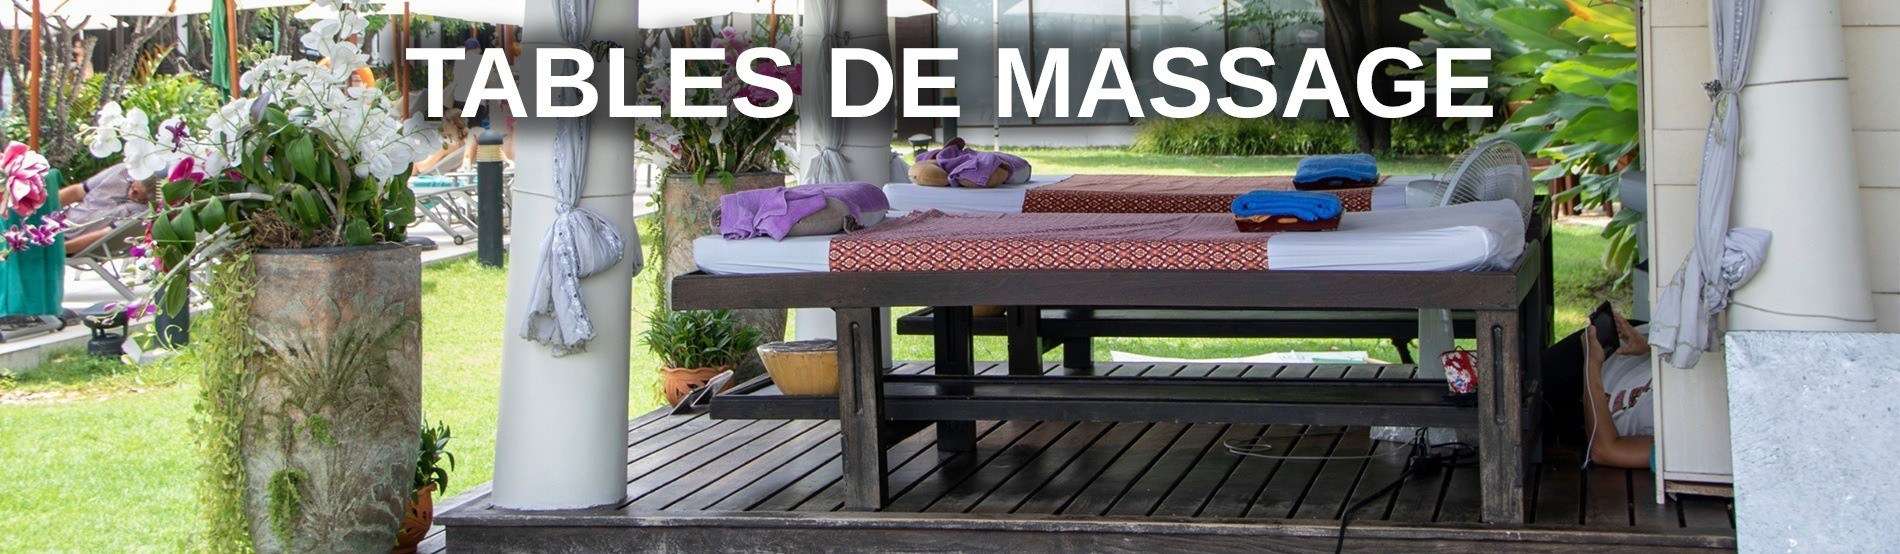 Massage couche lit table pour thaimassage